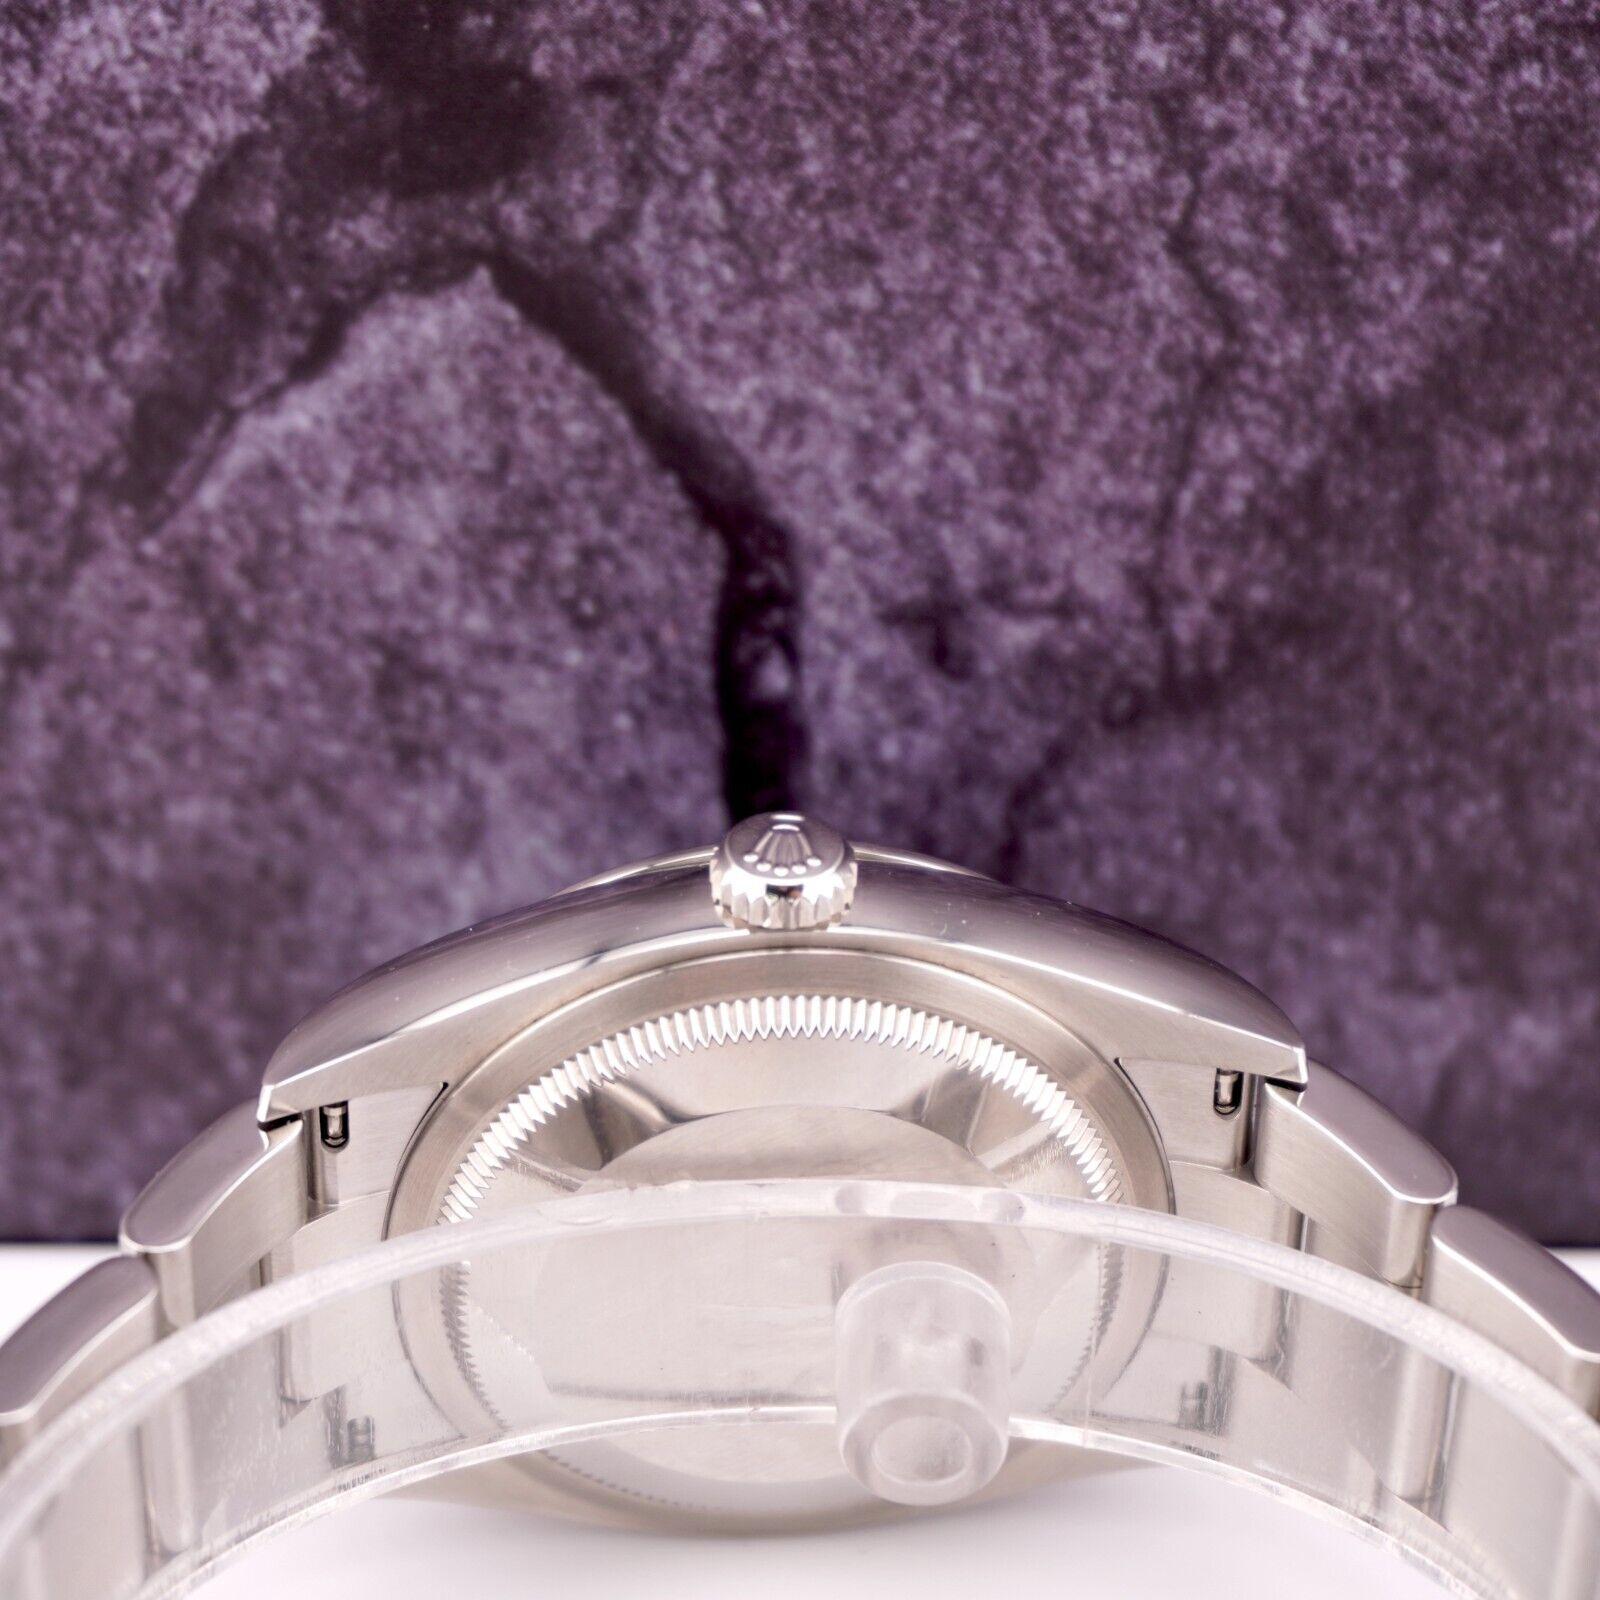 Montre Rolex Datejust 36 mm

D'occasion avec boîte et carte d'origine
Carte d'authenticité 100% authentique
Condition - (Excellent Condition) - Voir Pics
Référence de la montre - 126200
Modèle - Datejust
Couleur du cadran - Vert
Matériau - Acier